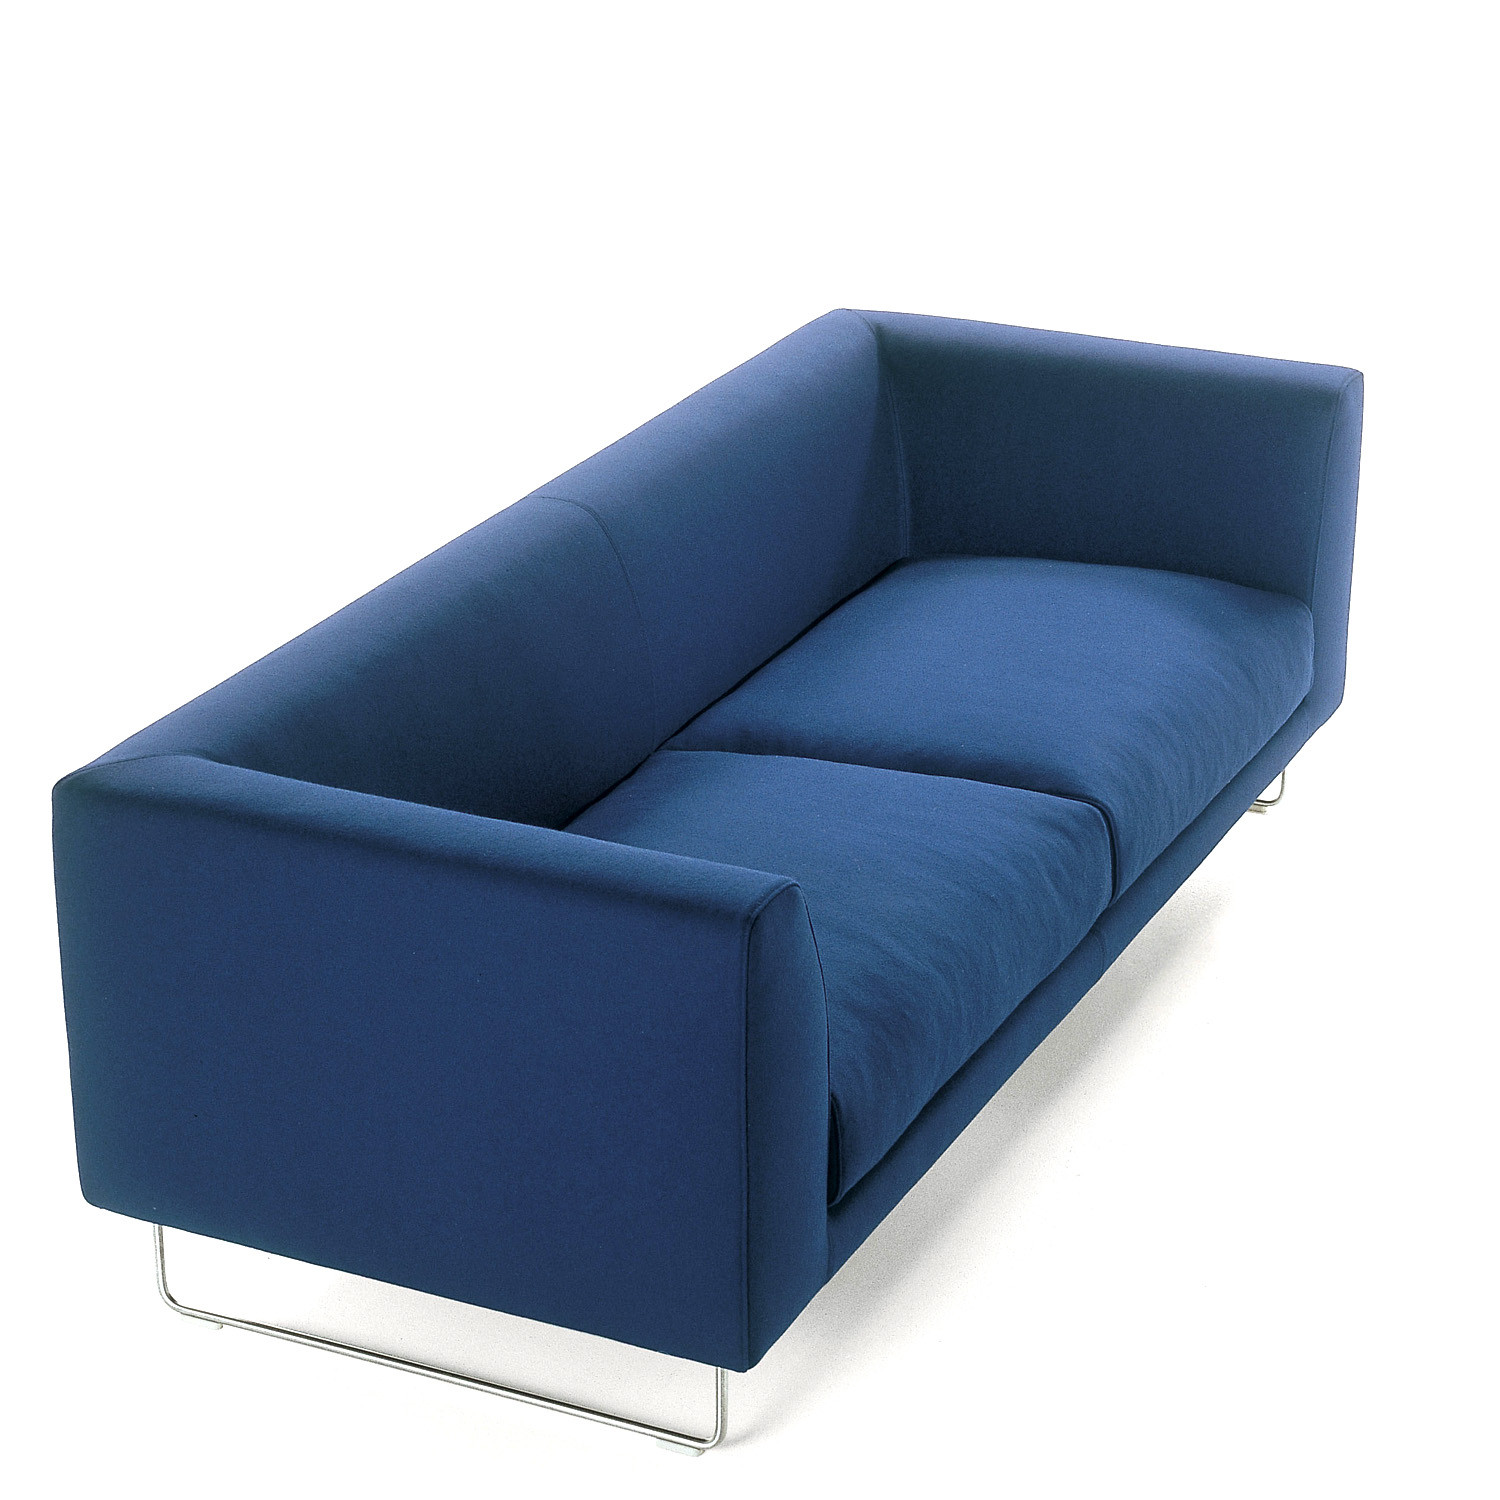 Elan Two Seat Sofa by Jasper Morrison